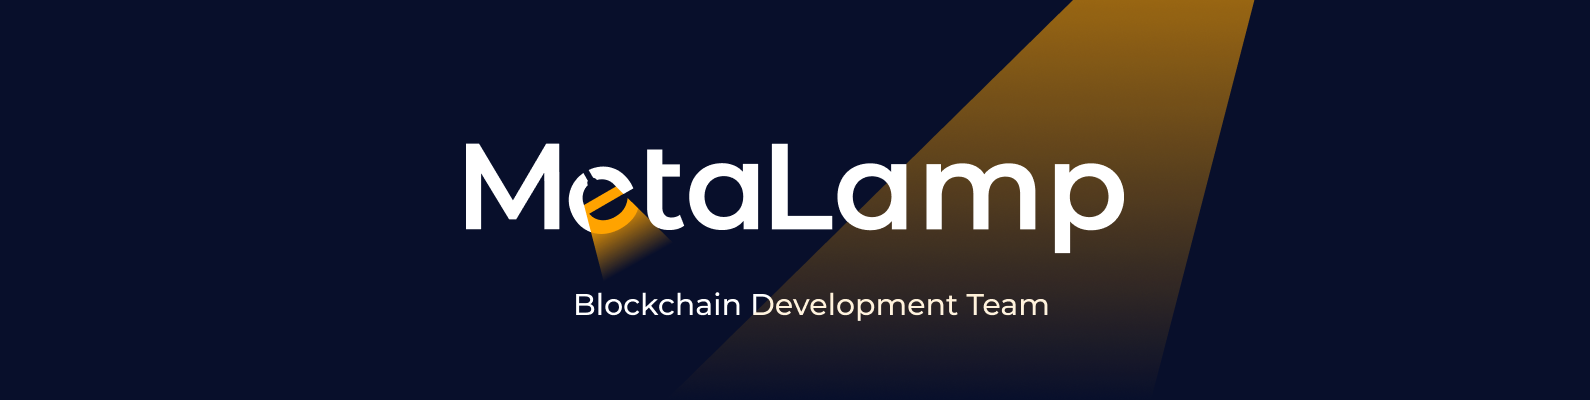 MetaLamp logo